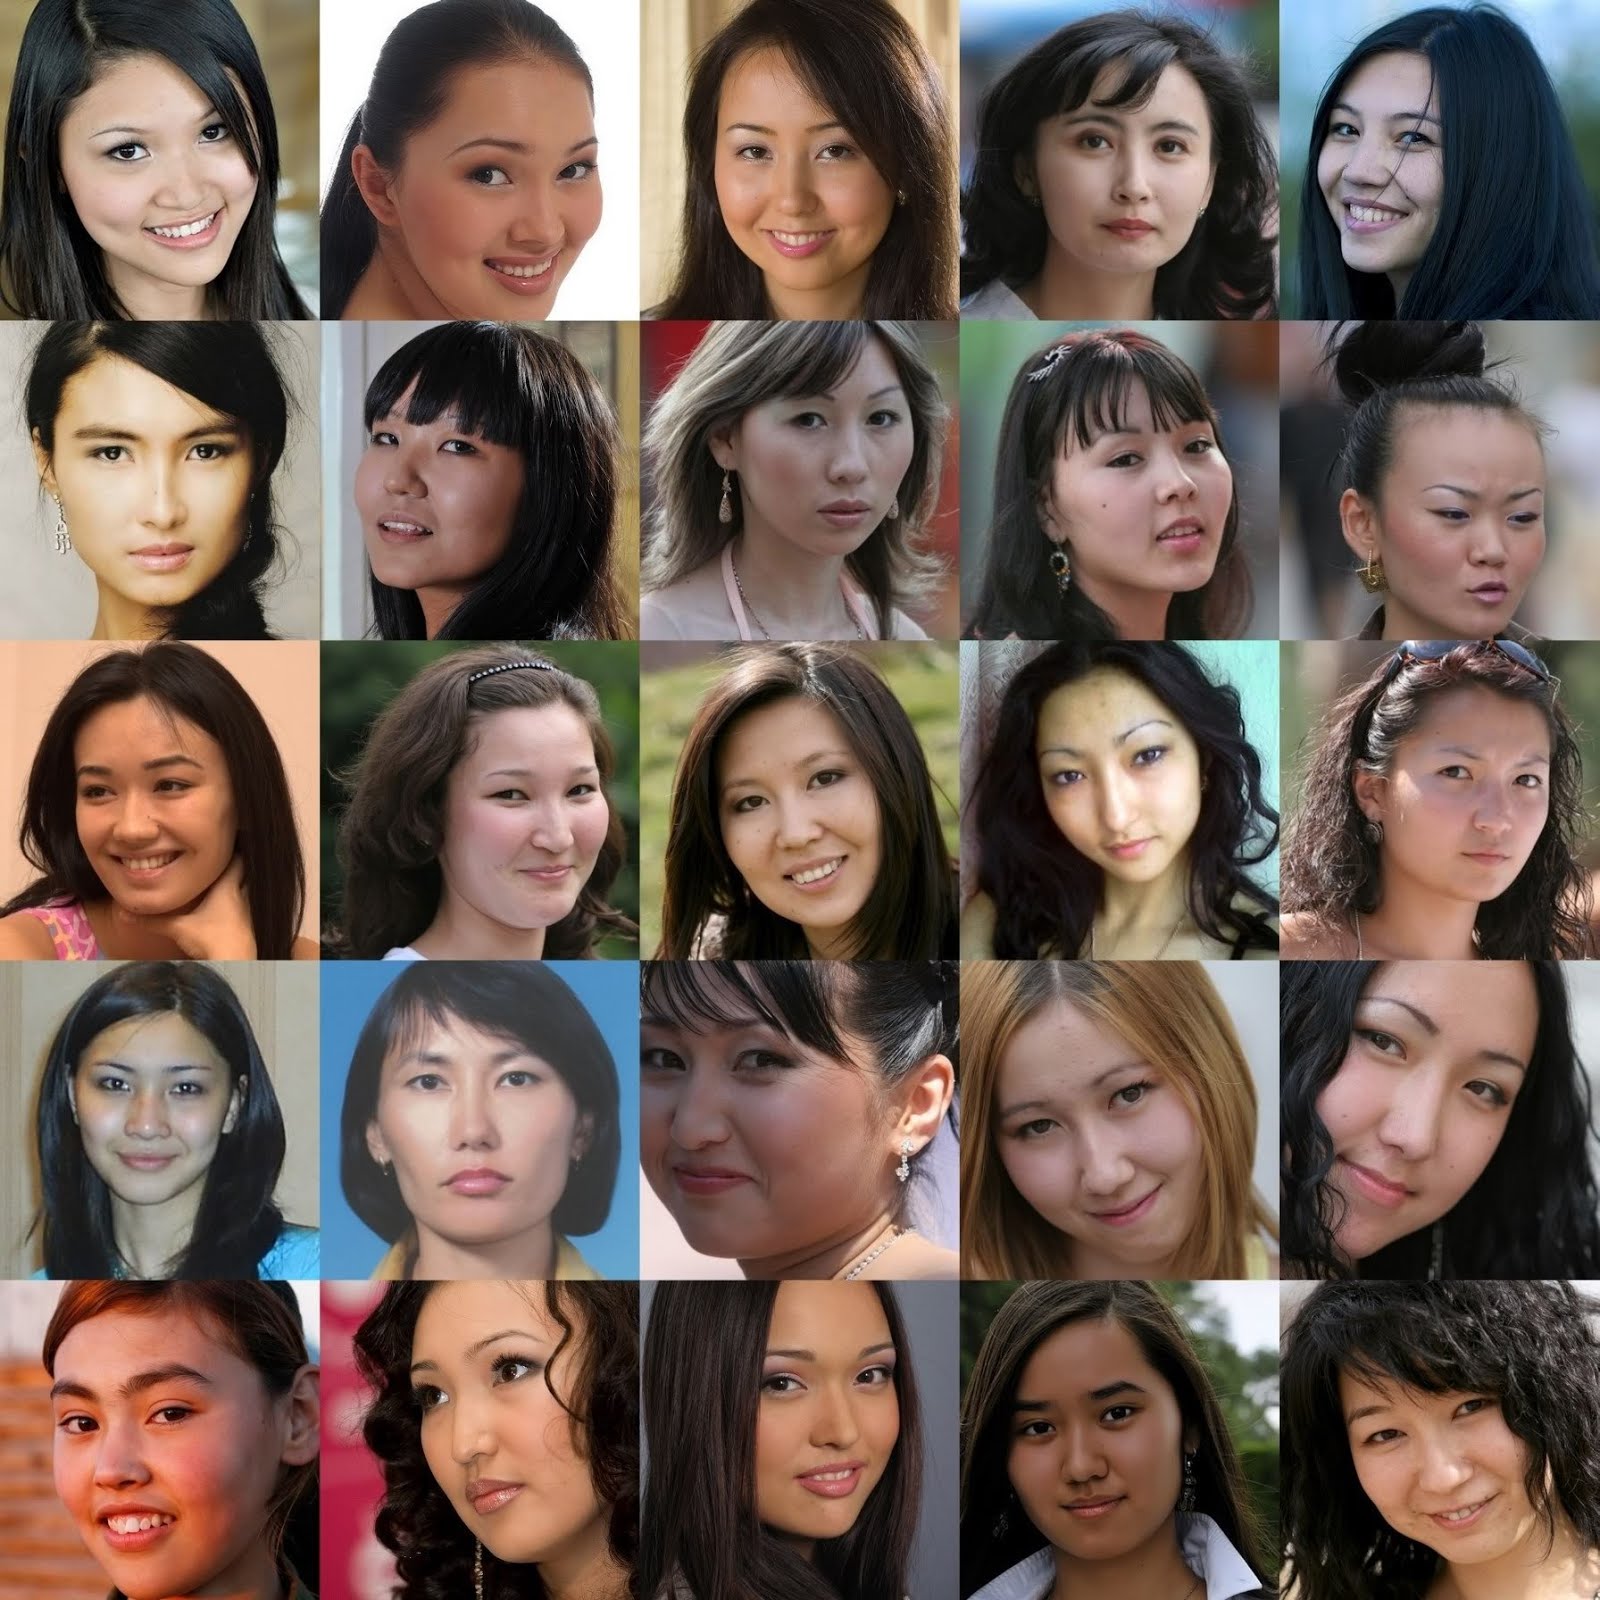 キルギスとは少し違う 中央アジア カザフスタン人 の美女 イケメン Top10 Multilingirl